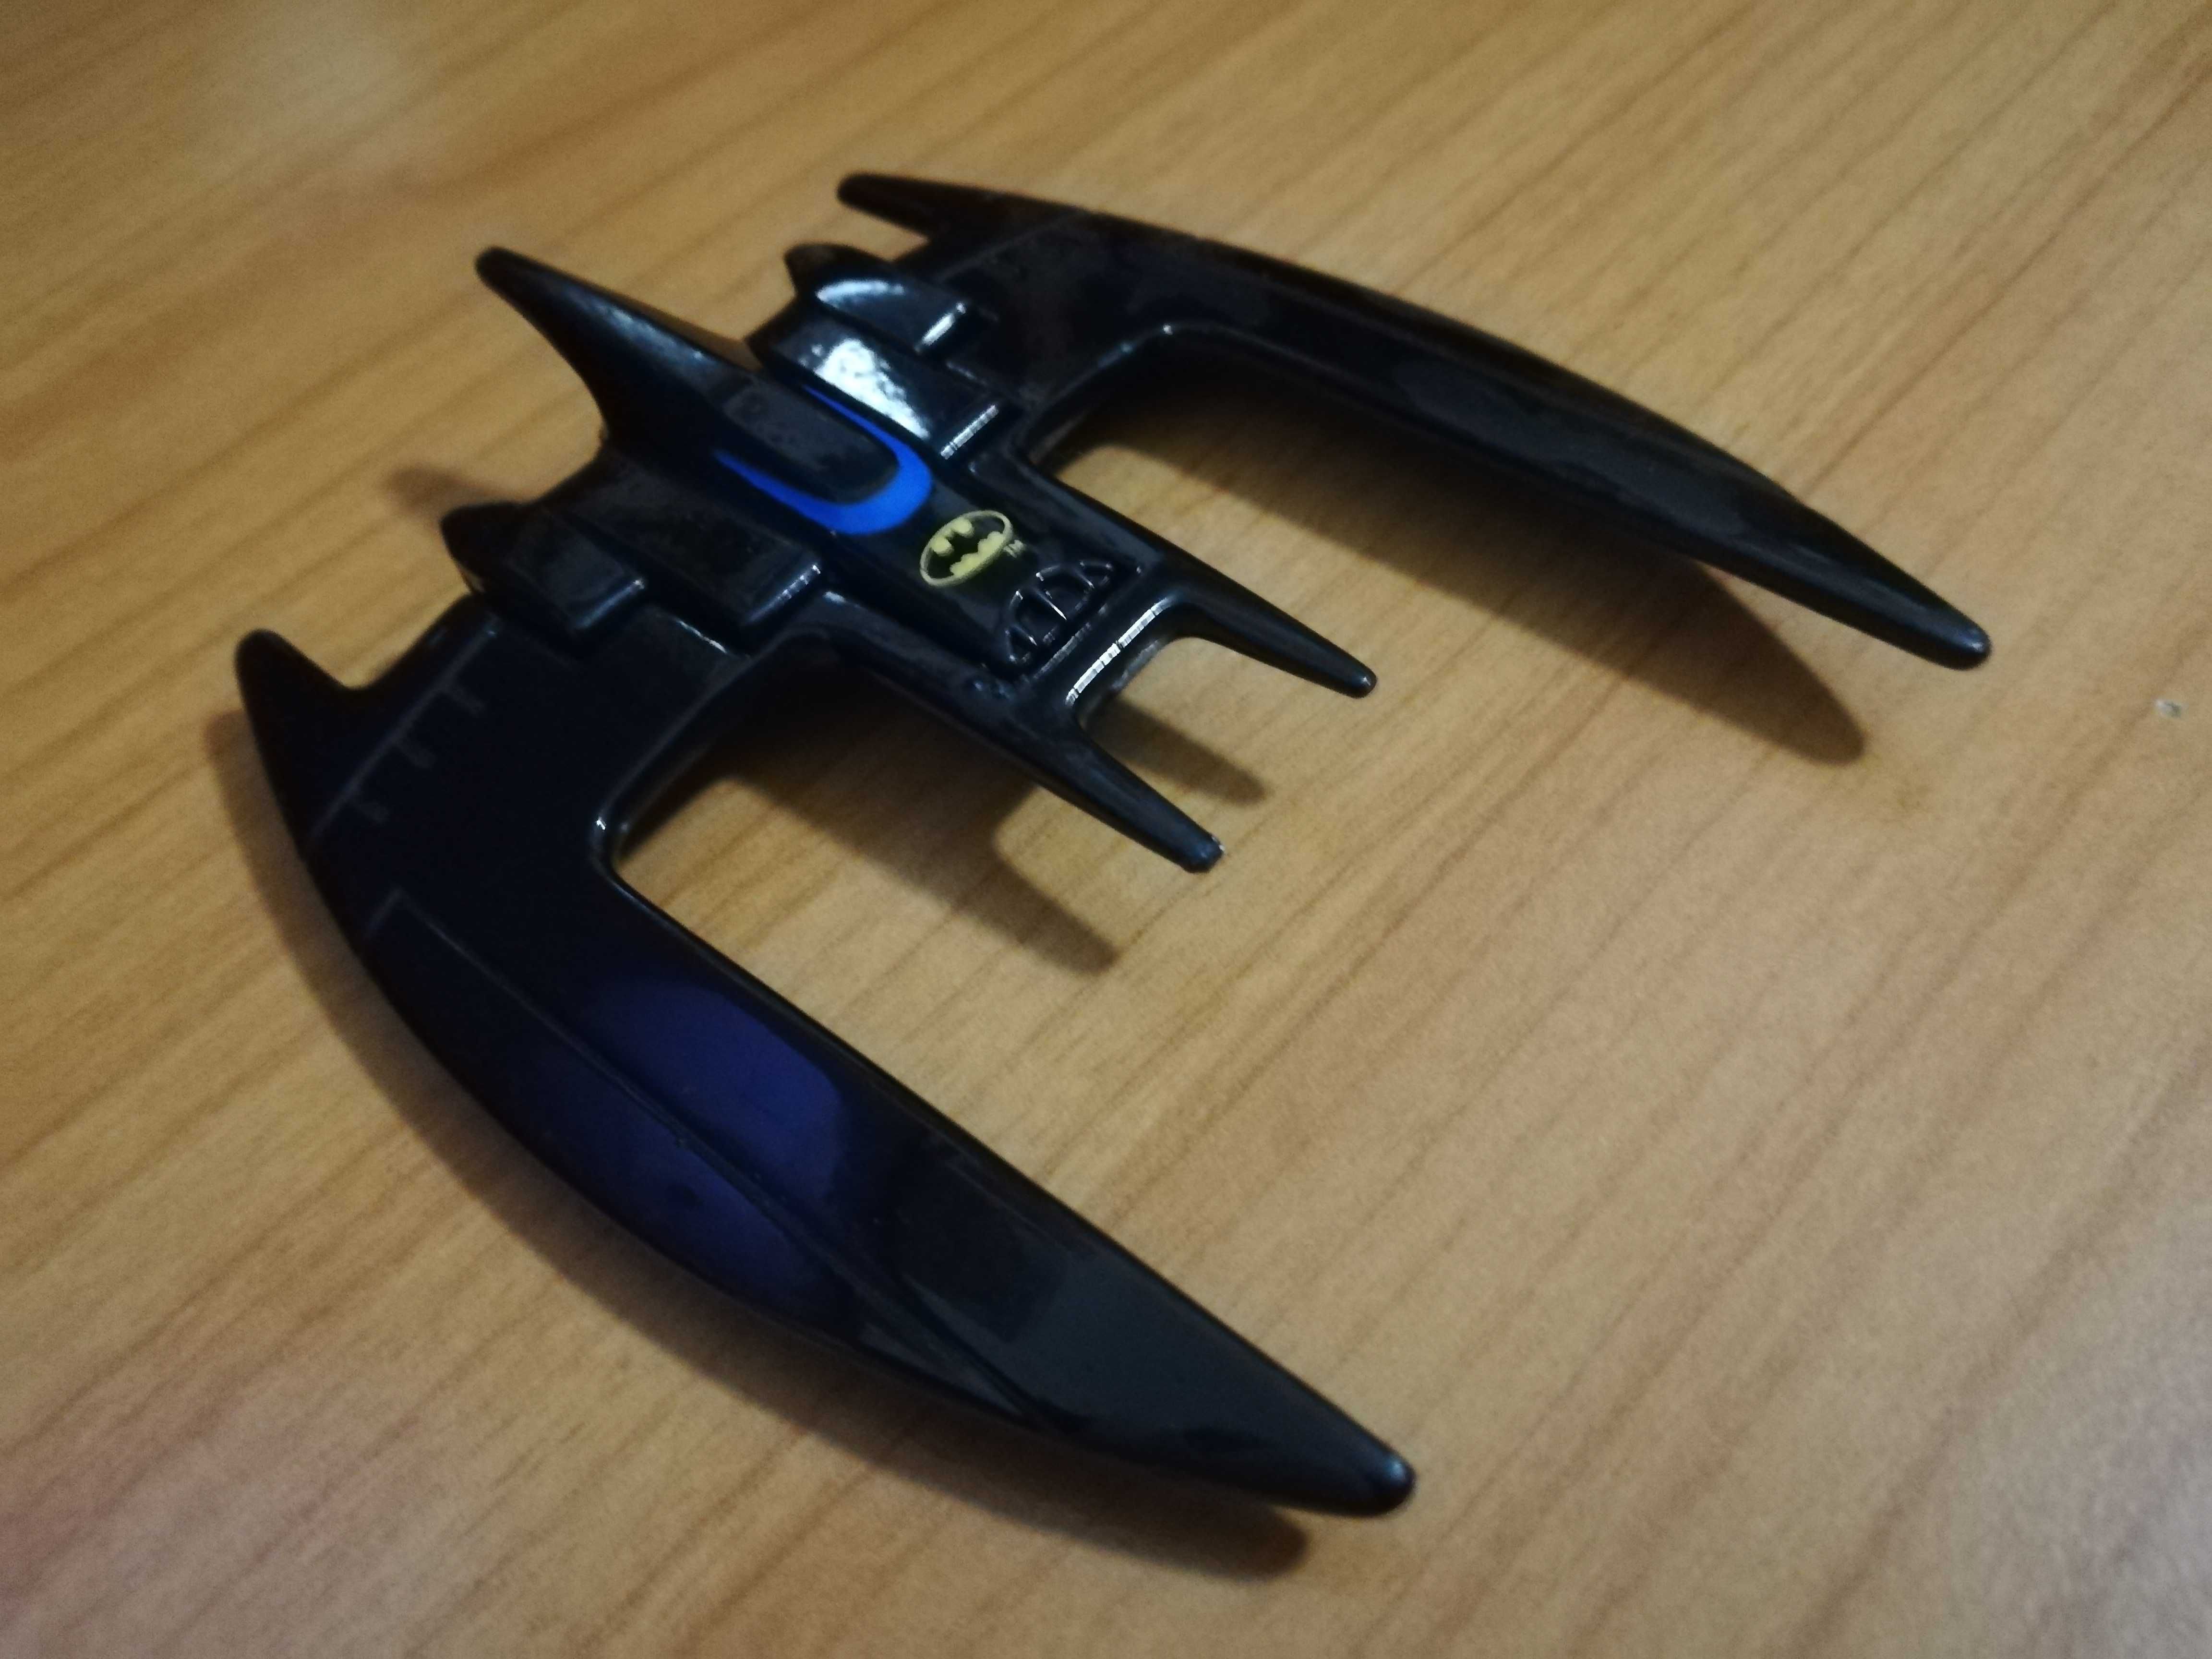 Batplane - Batman Seria Animata,firma ERTL anii 90's. 1:64